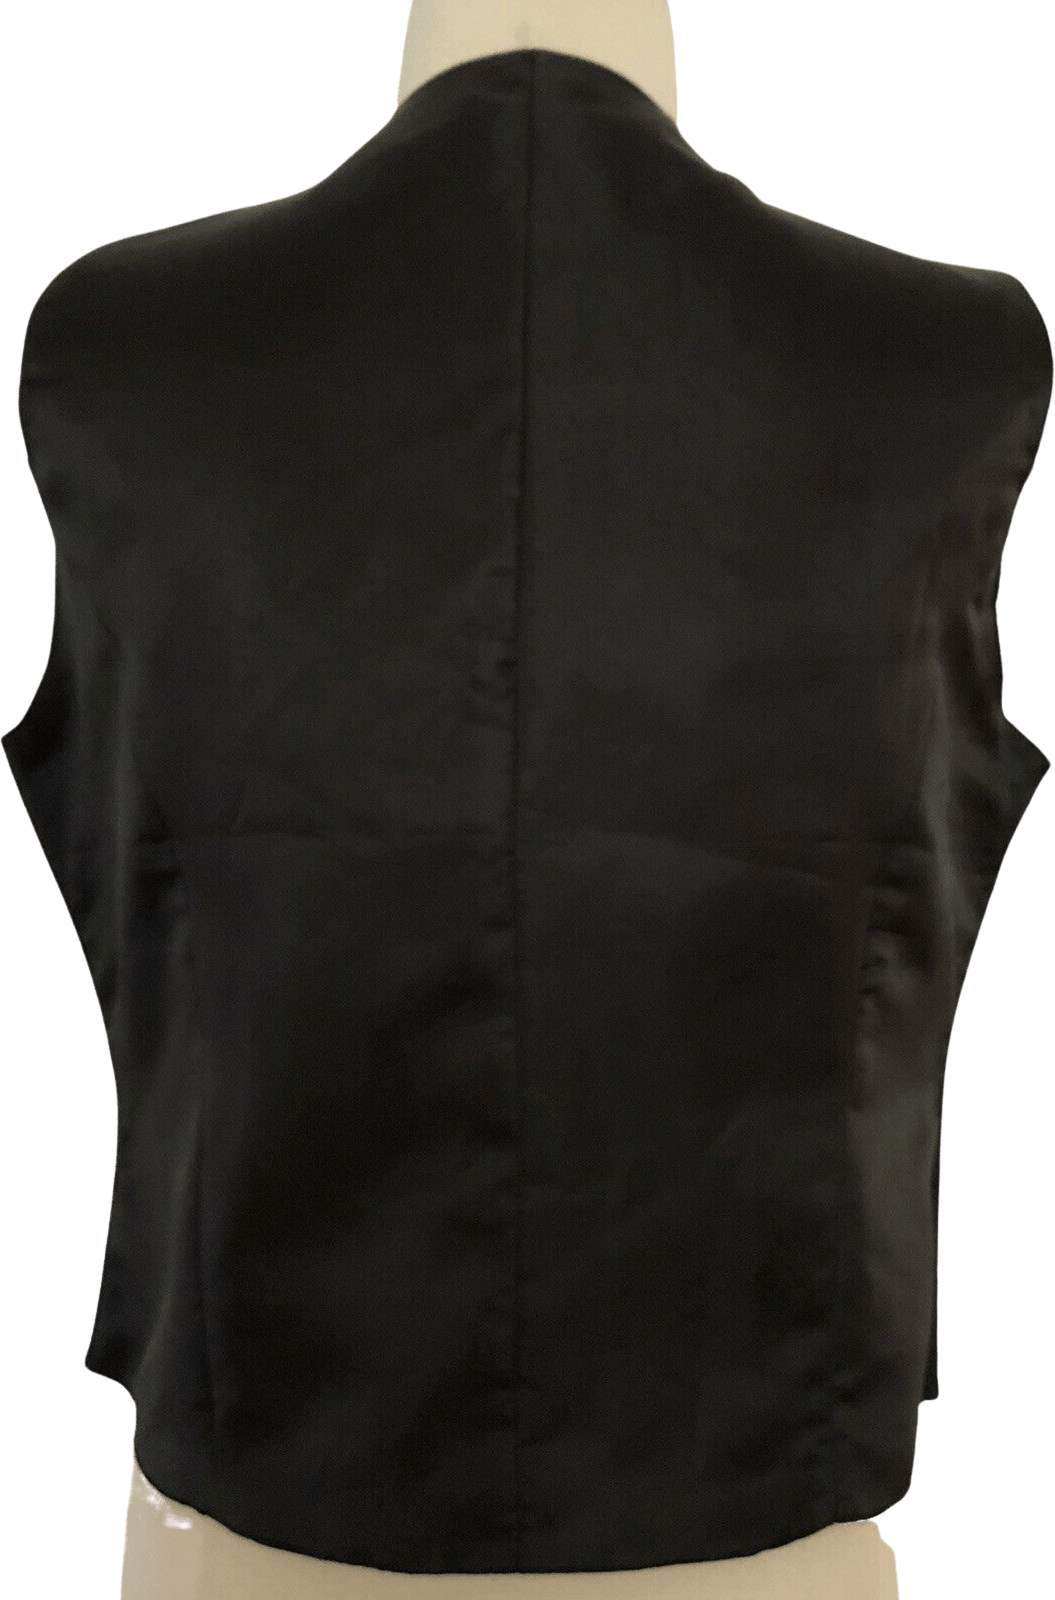 Vintage 80's/90's Black Leather Vest by Styleworks | Shop THRILLING